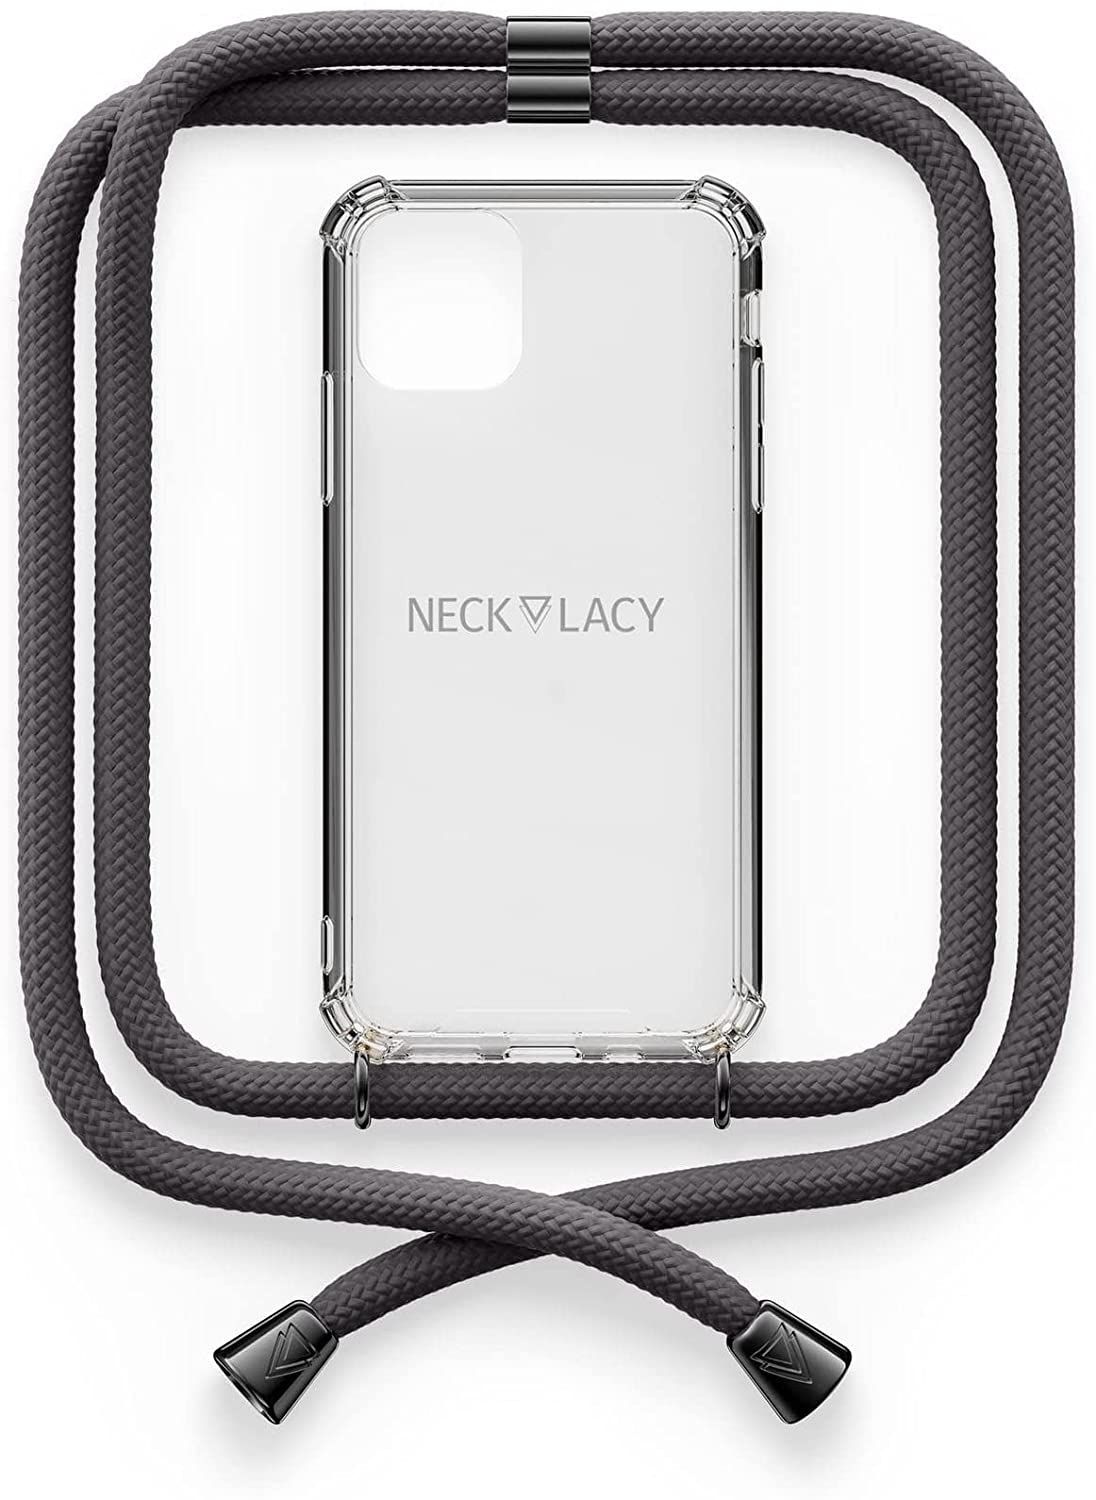 NECKLACY Handykette Handyhülle zum umhängen - für iPhone 11 - Case / Handyhülle mit Band zum umhängen - Trageband Hals mit Kordel - Smartphone Necklace, Stormy Gray Gunmetal